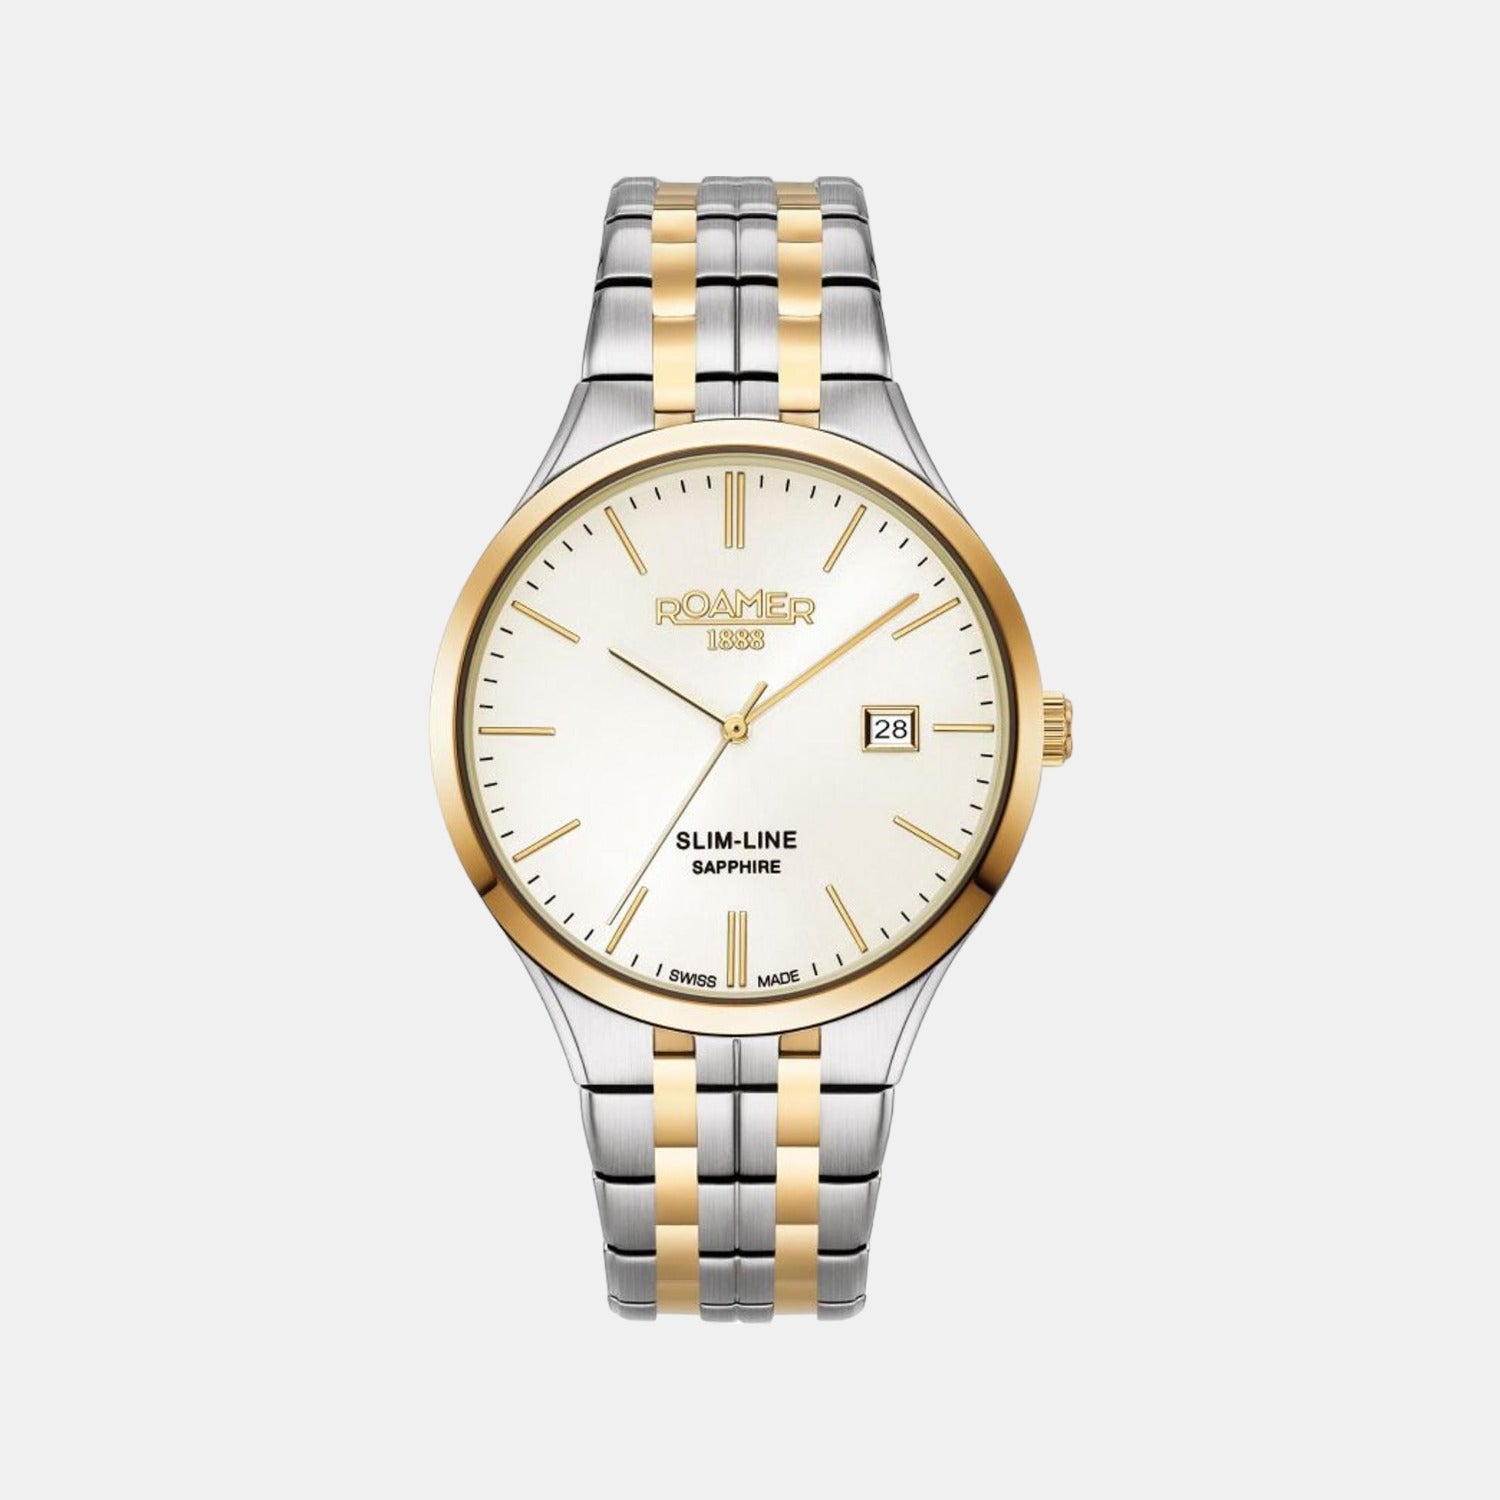 Gupta Watch Co in Civil Lines,Bareilly - Best Casio-Wrist Watch Dealers in  Bareilly - Justdial